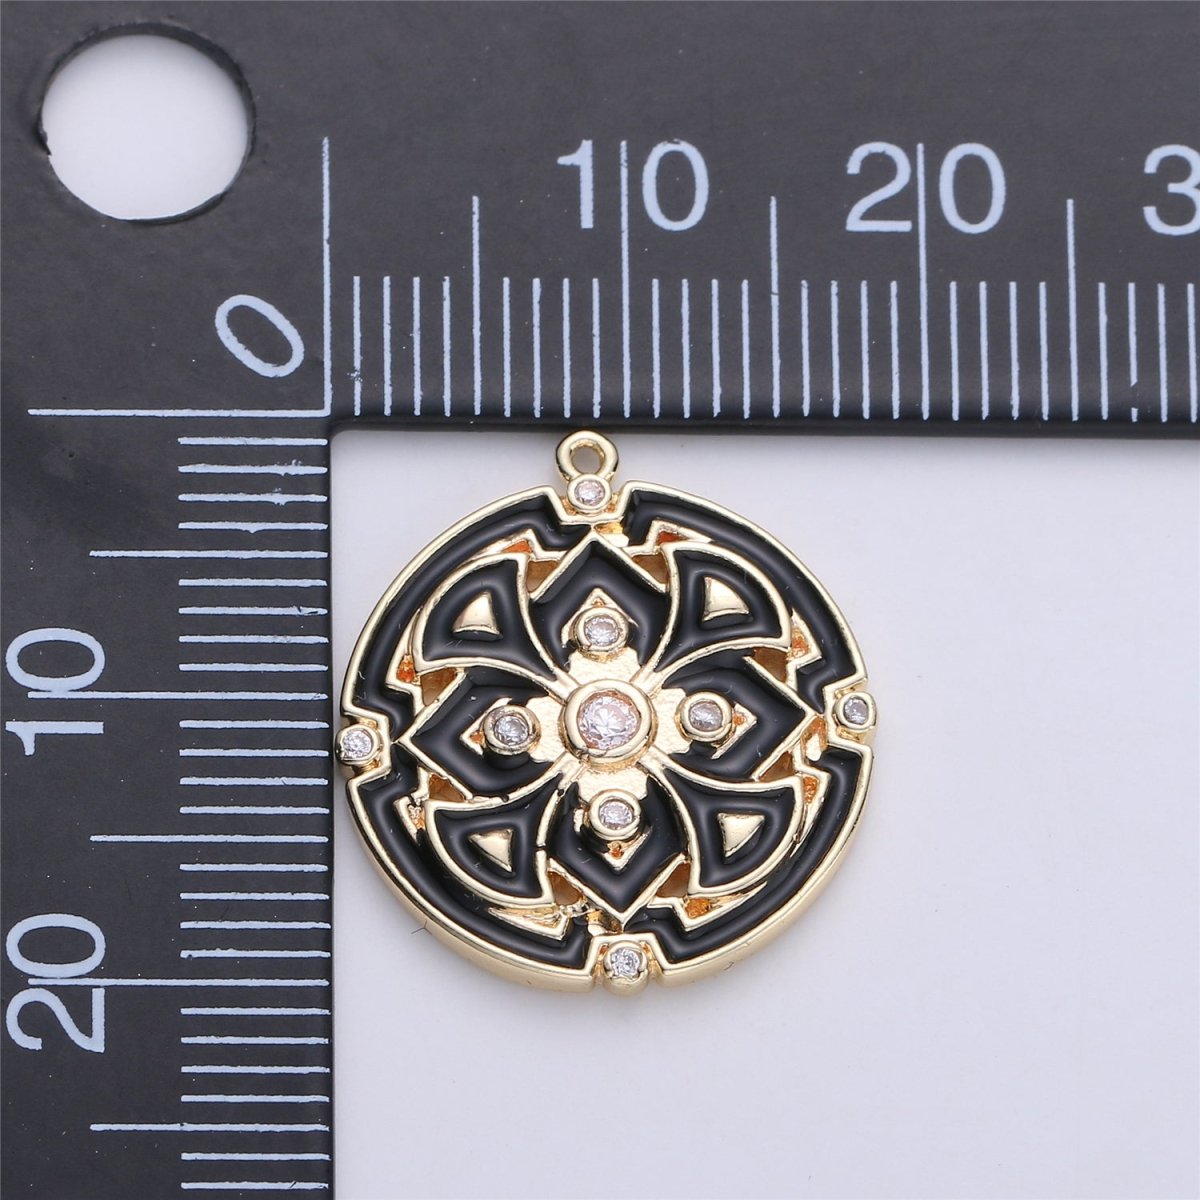 Gold Filled Micro Pave Black White Enamel Round Disc Charms Medallion Pendant, Enamel Pendant, Round Enamel C-620 - DLUXCA